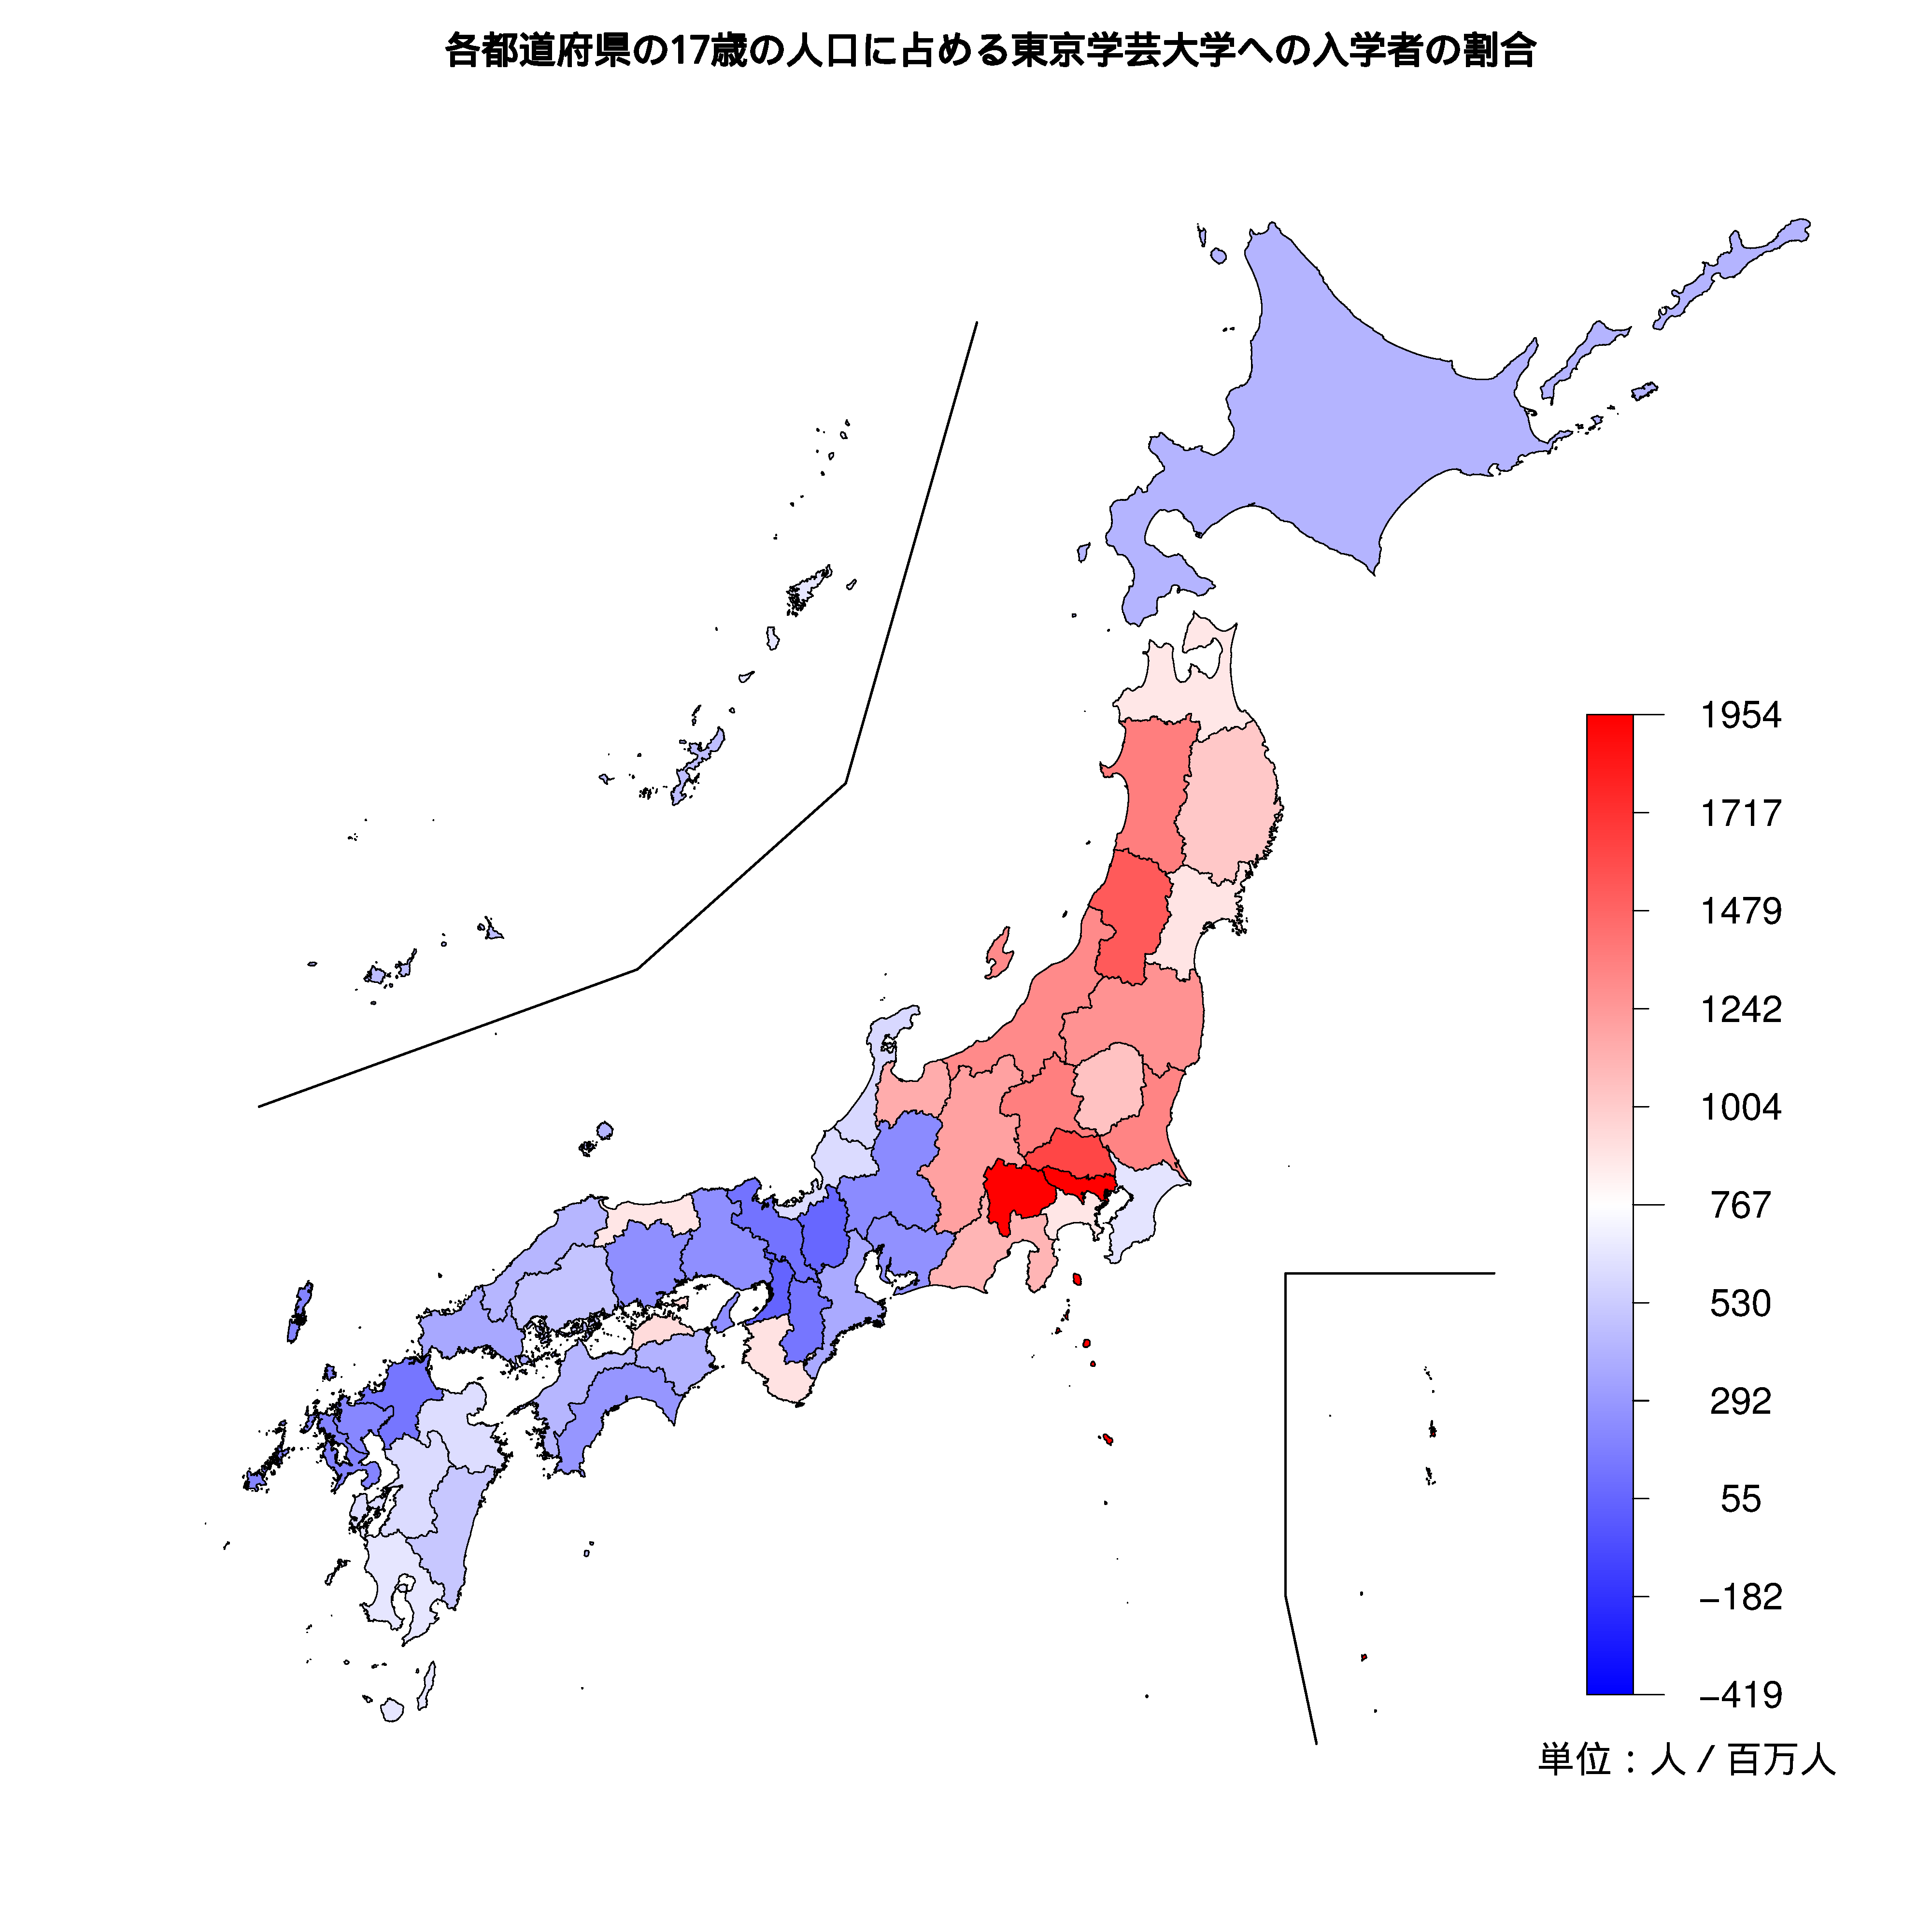 東京学芸大学への入学者が多い都道府県の色分け地図